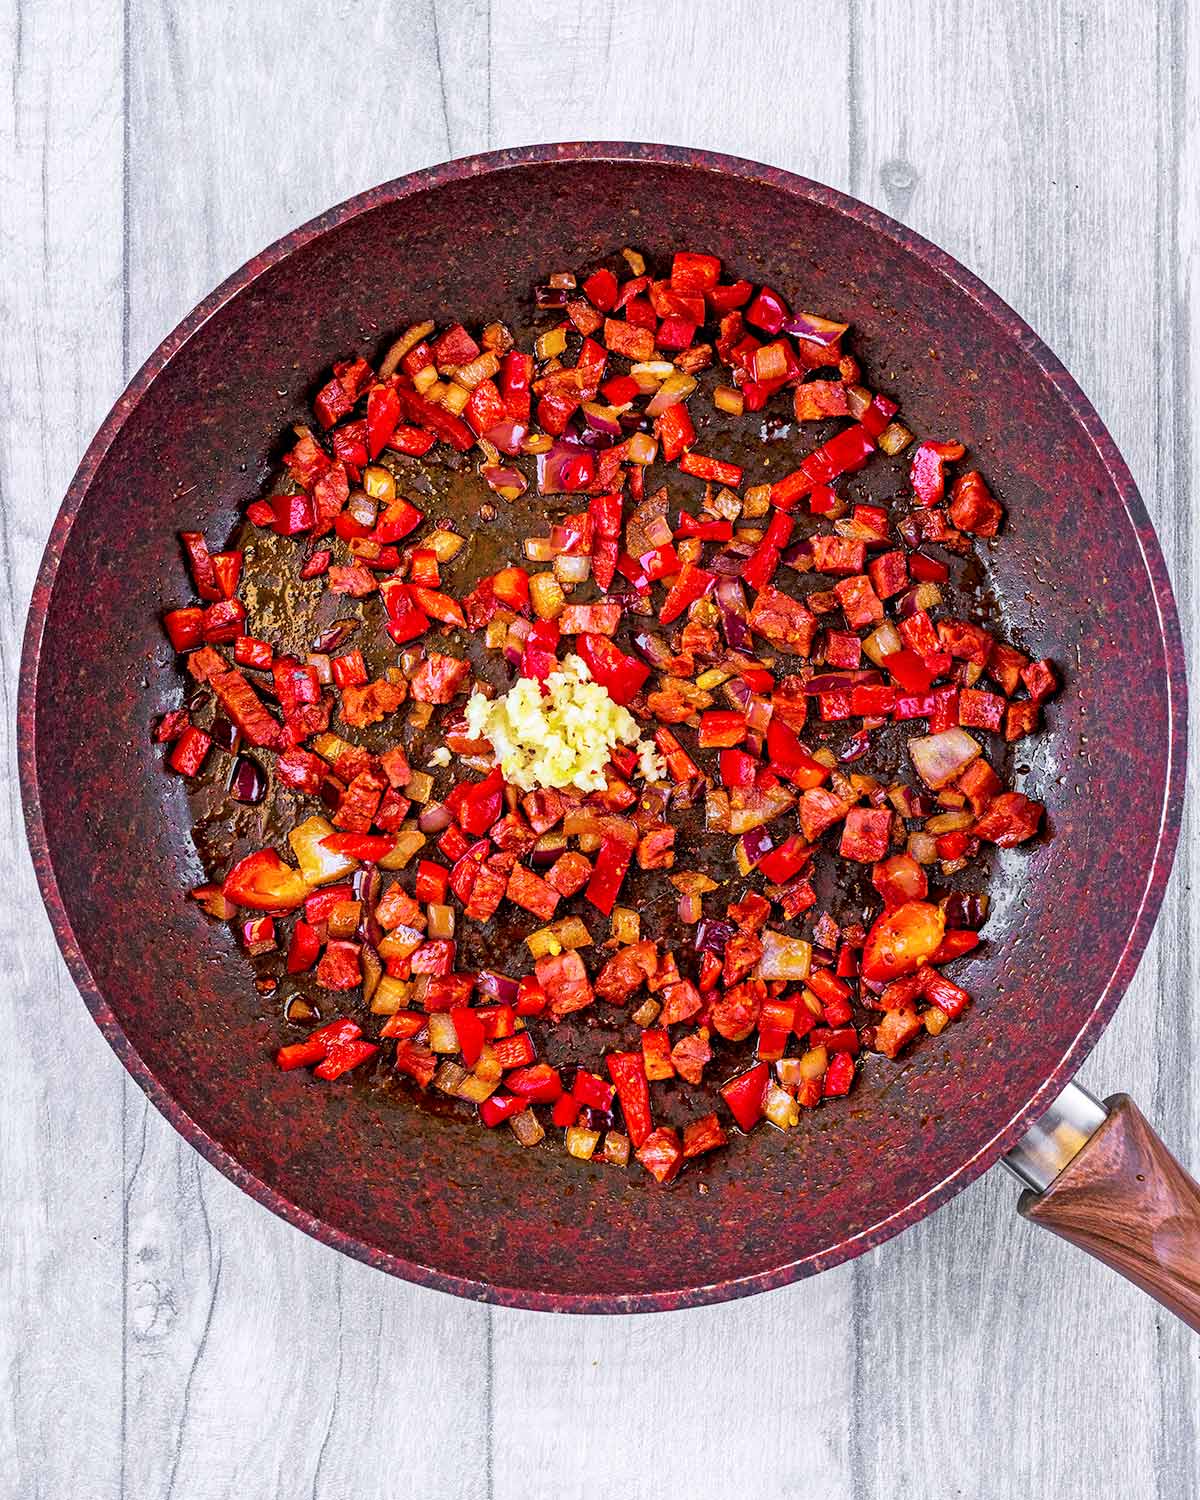 Chorizo, garlic and chilli added to the pan.